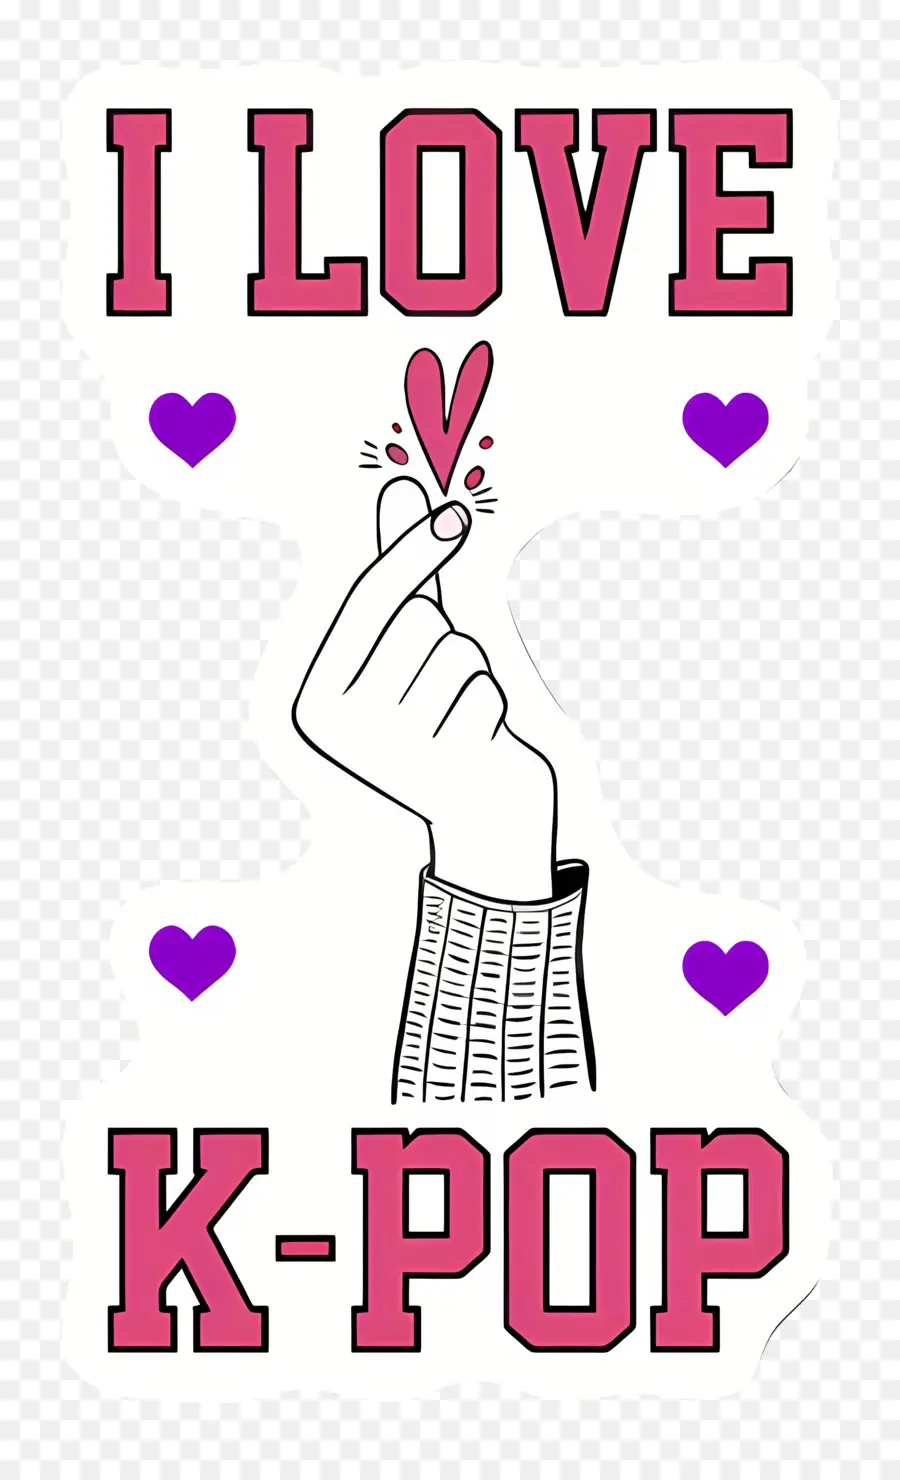 Kpop K-Pop Ich liebe K-Pop-Aufkleber K-Pop - Schwarzer Hintergrund mit rosa Text und Herzen